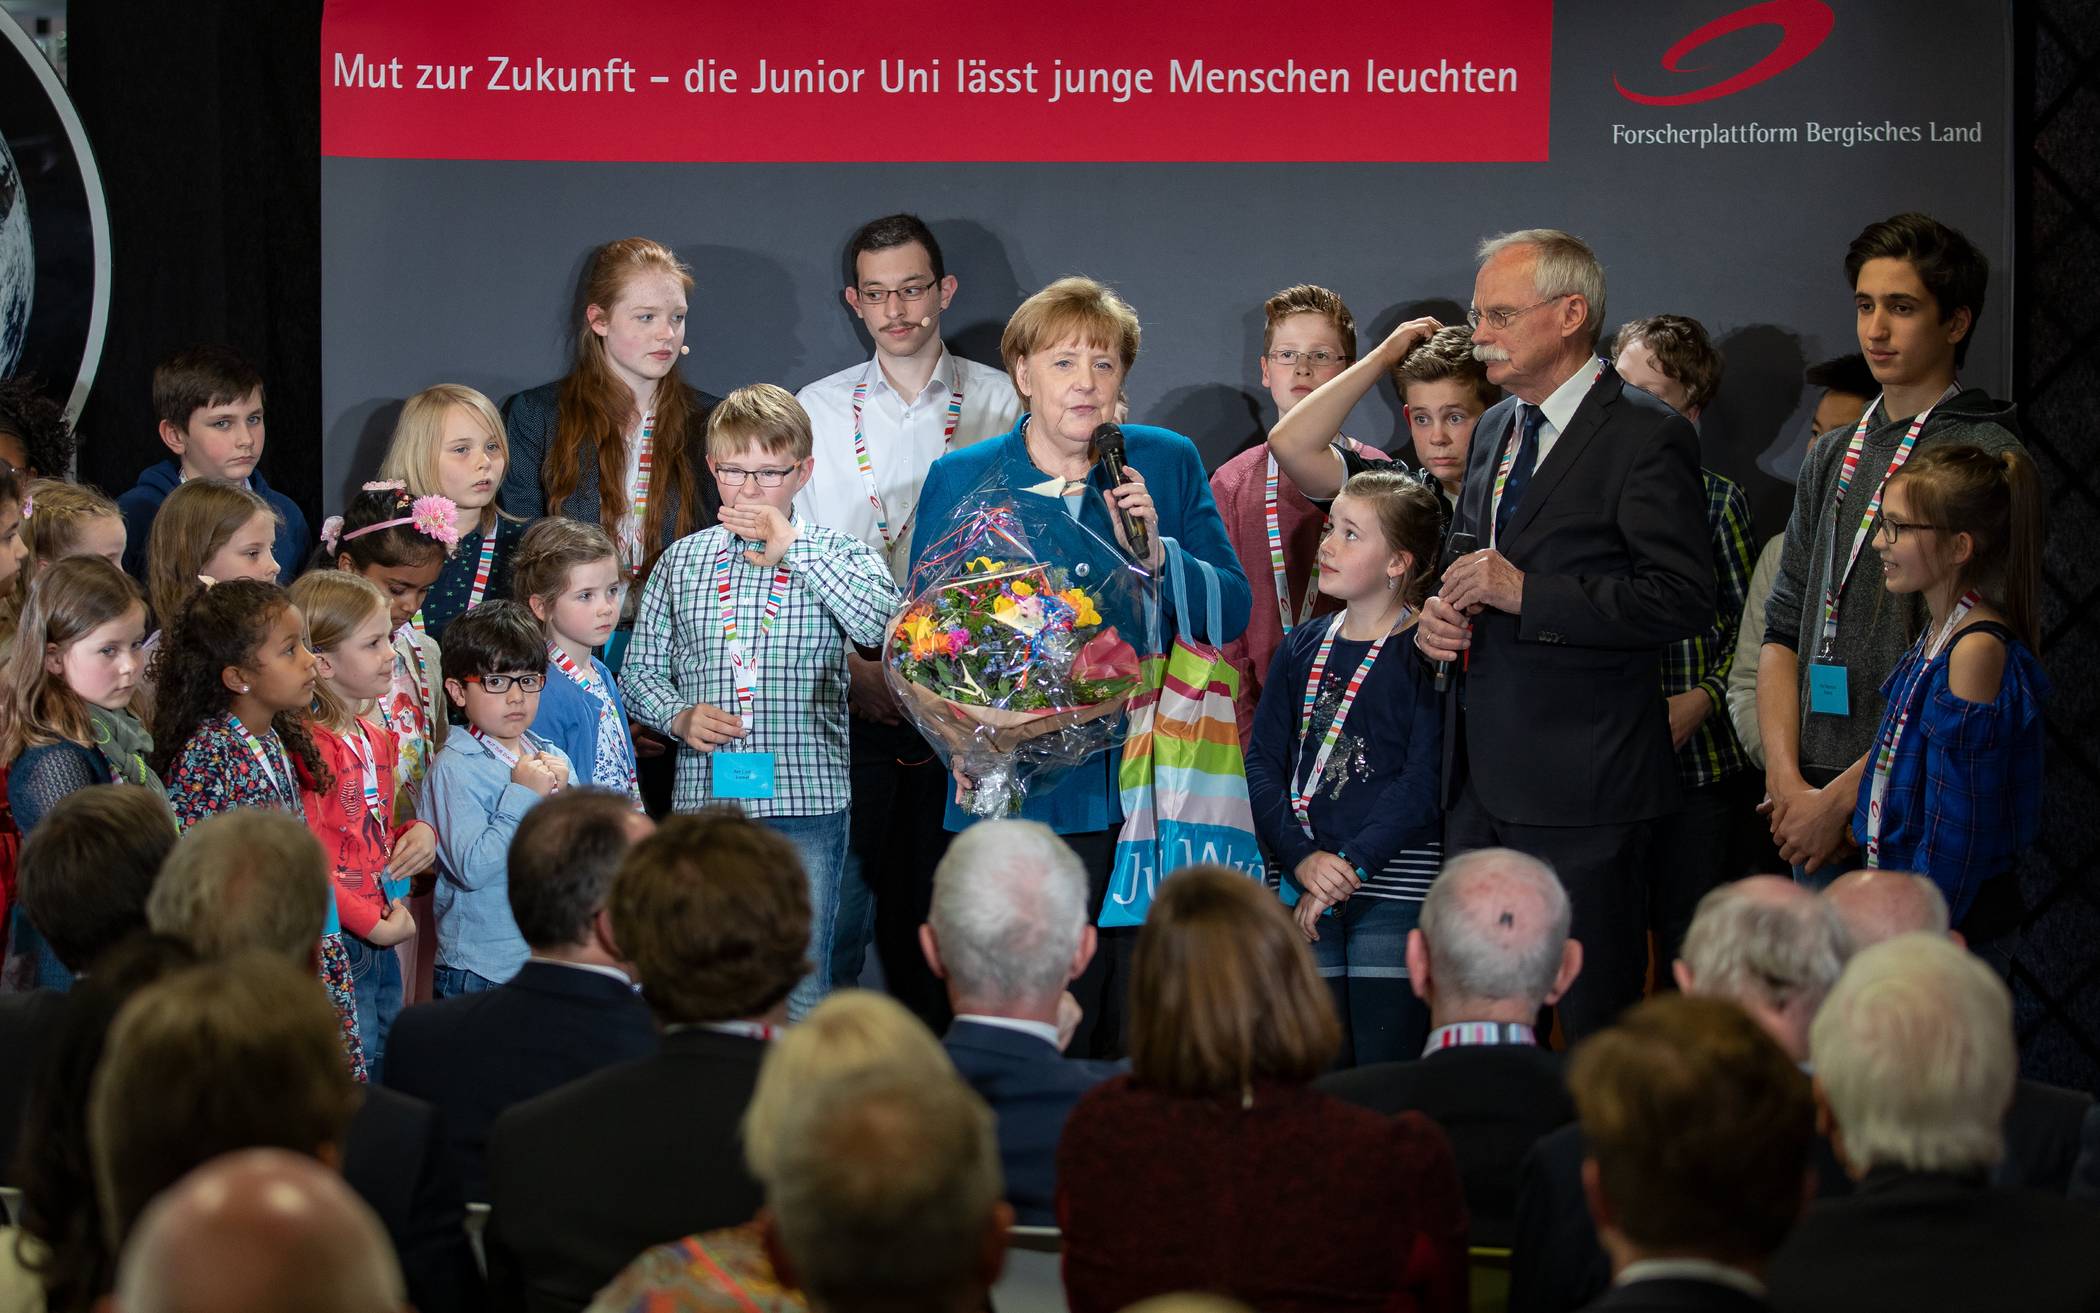 Angela Merkel zu Besuch in der Junior Uni